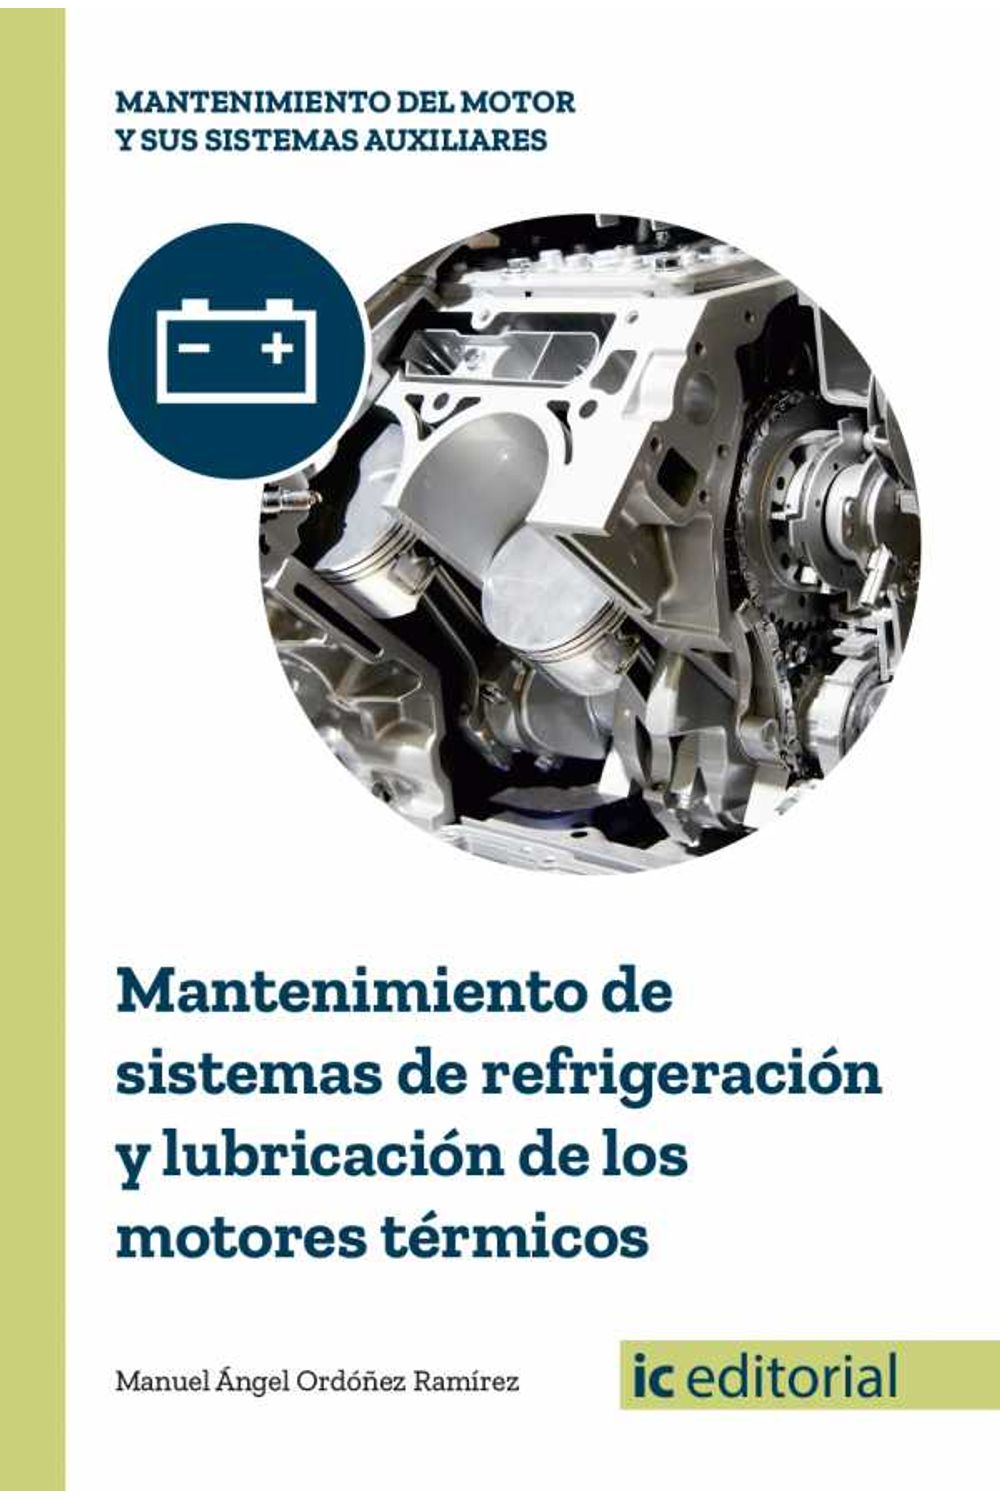 bm-mantenimiento-de-sistemas-de-refrigeracion-y-lubricacion-de-los-motores-termicos-ic-editorial-9788491980100